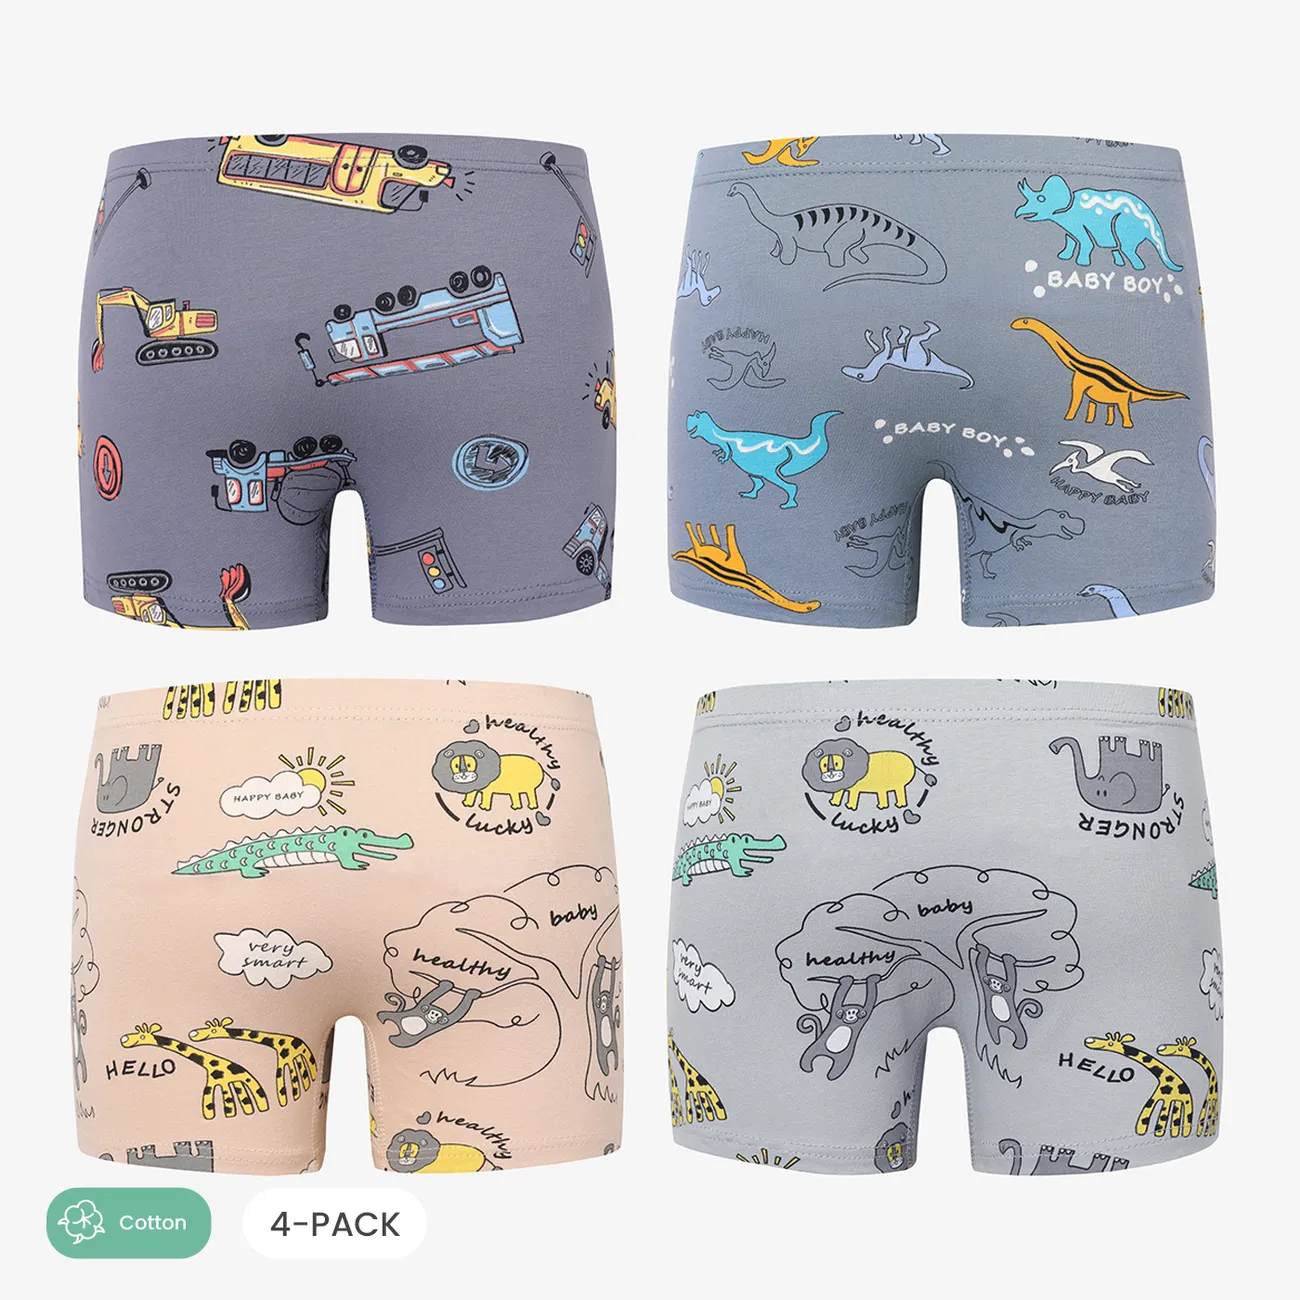 4 packs of boys' underwear, little boy's briefs, shorts